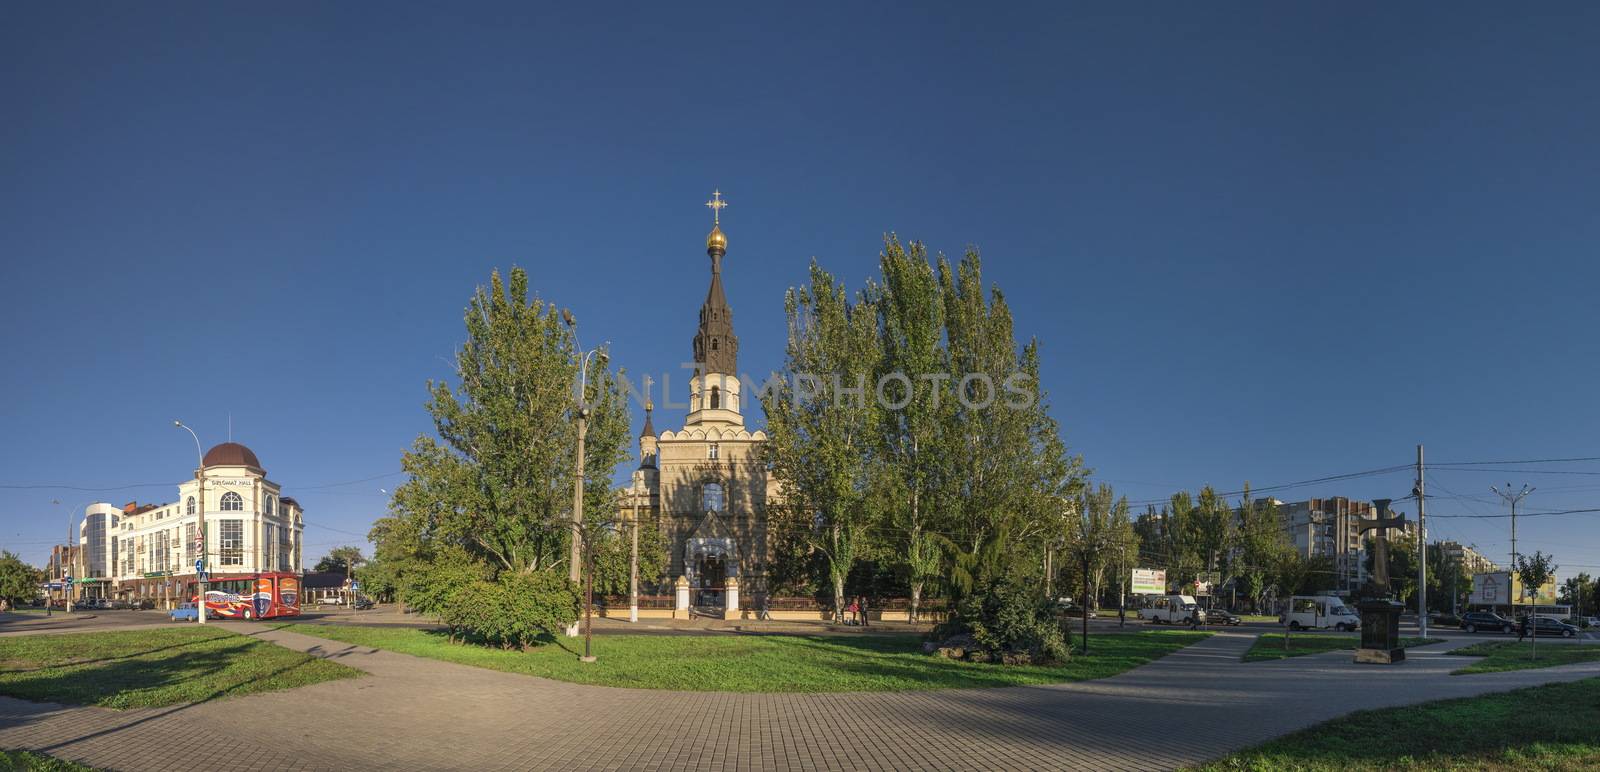 Cathedral Church in Nikolaev, Ukraine by Multipedia